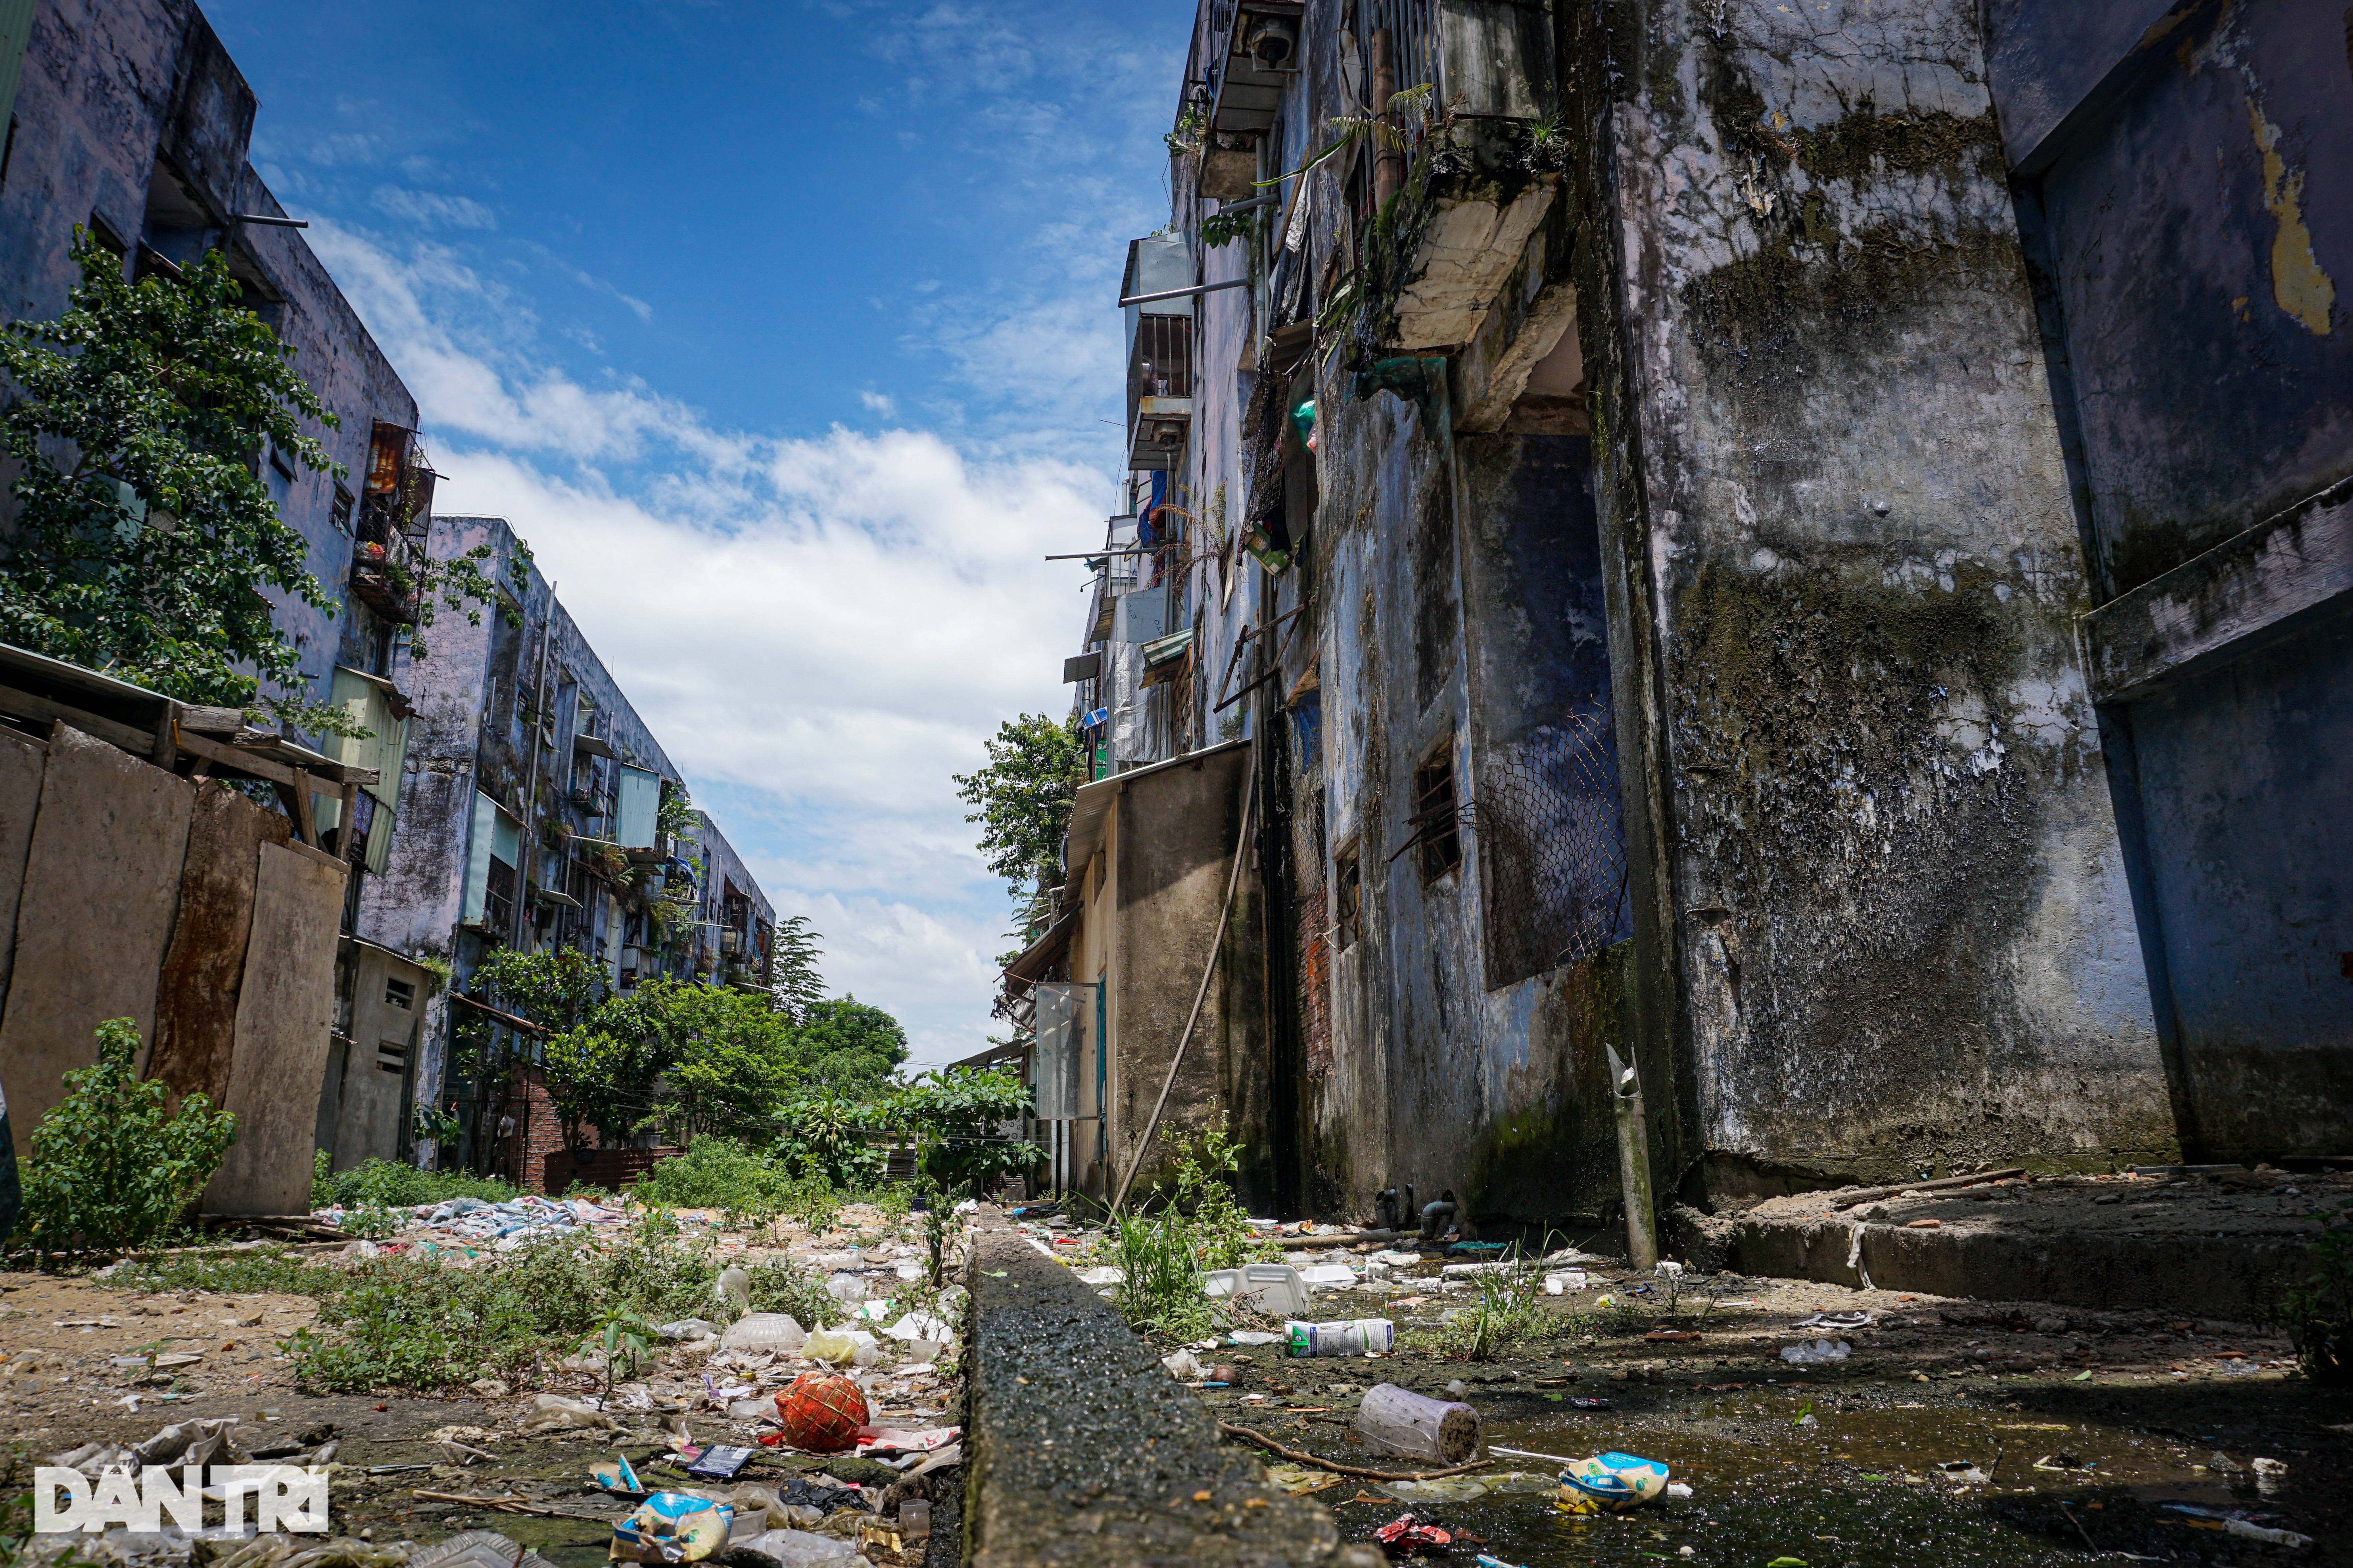 Lối thoát cho chung cư chờ sập, ngập rác và chuột ở Đà Nẵng - 1